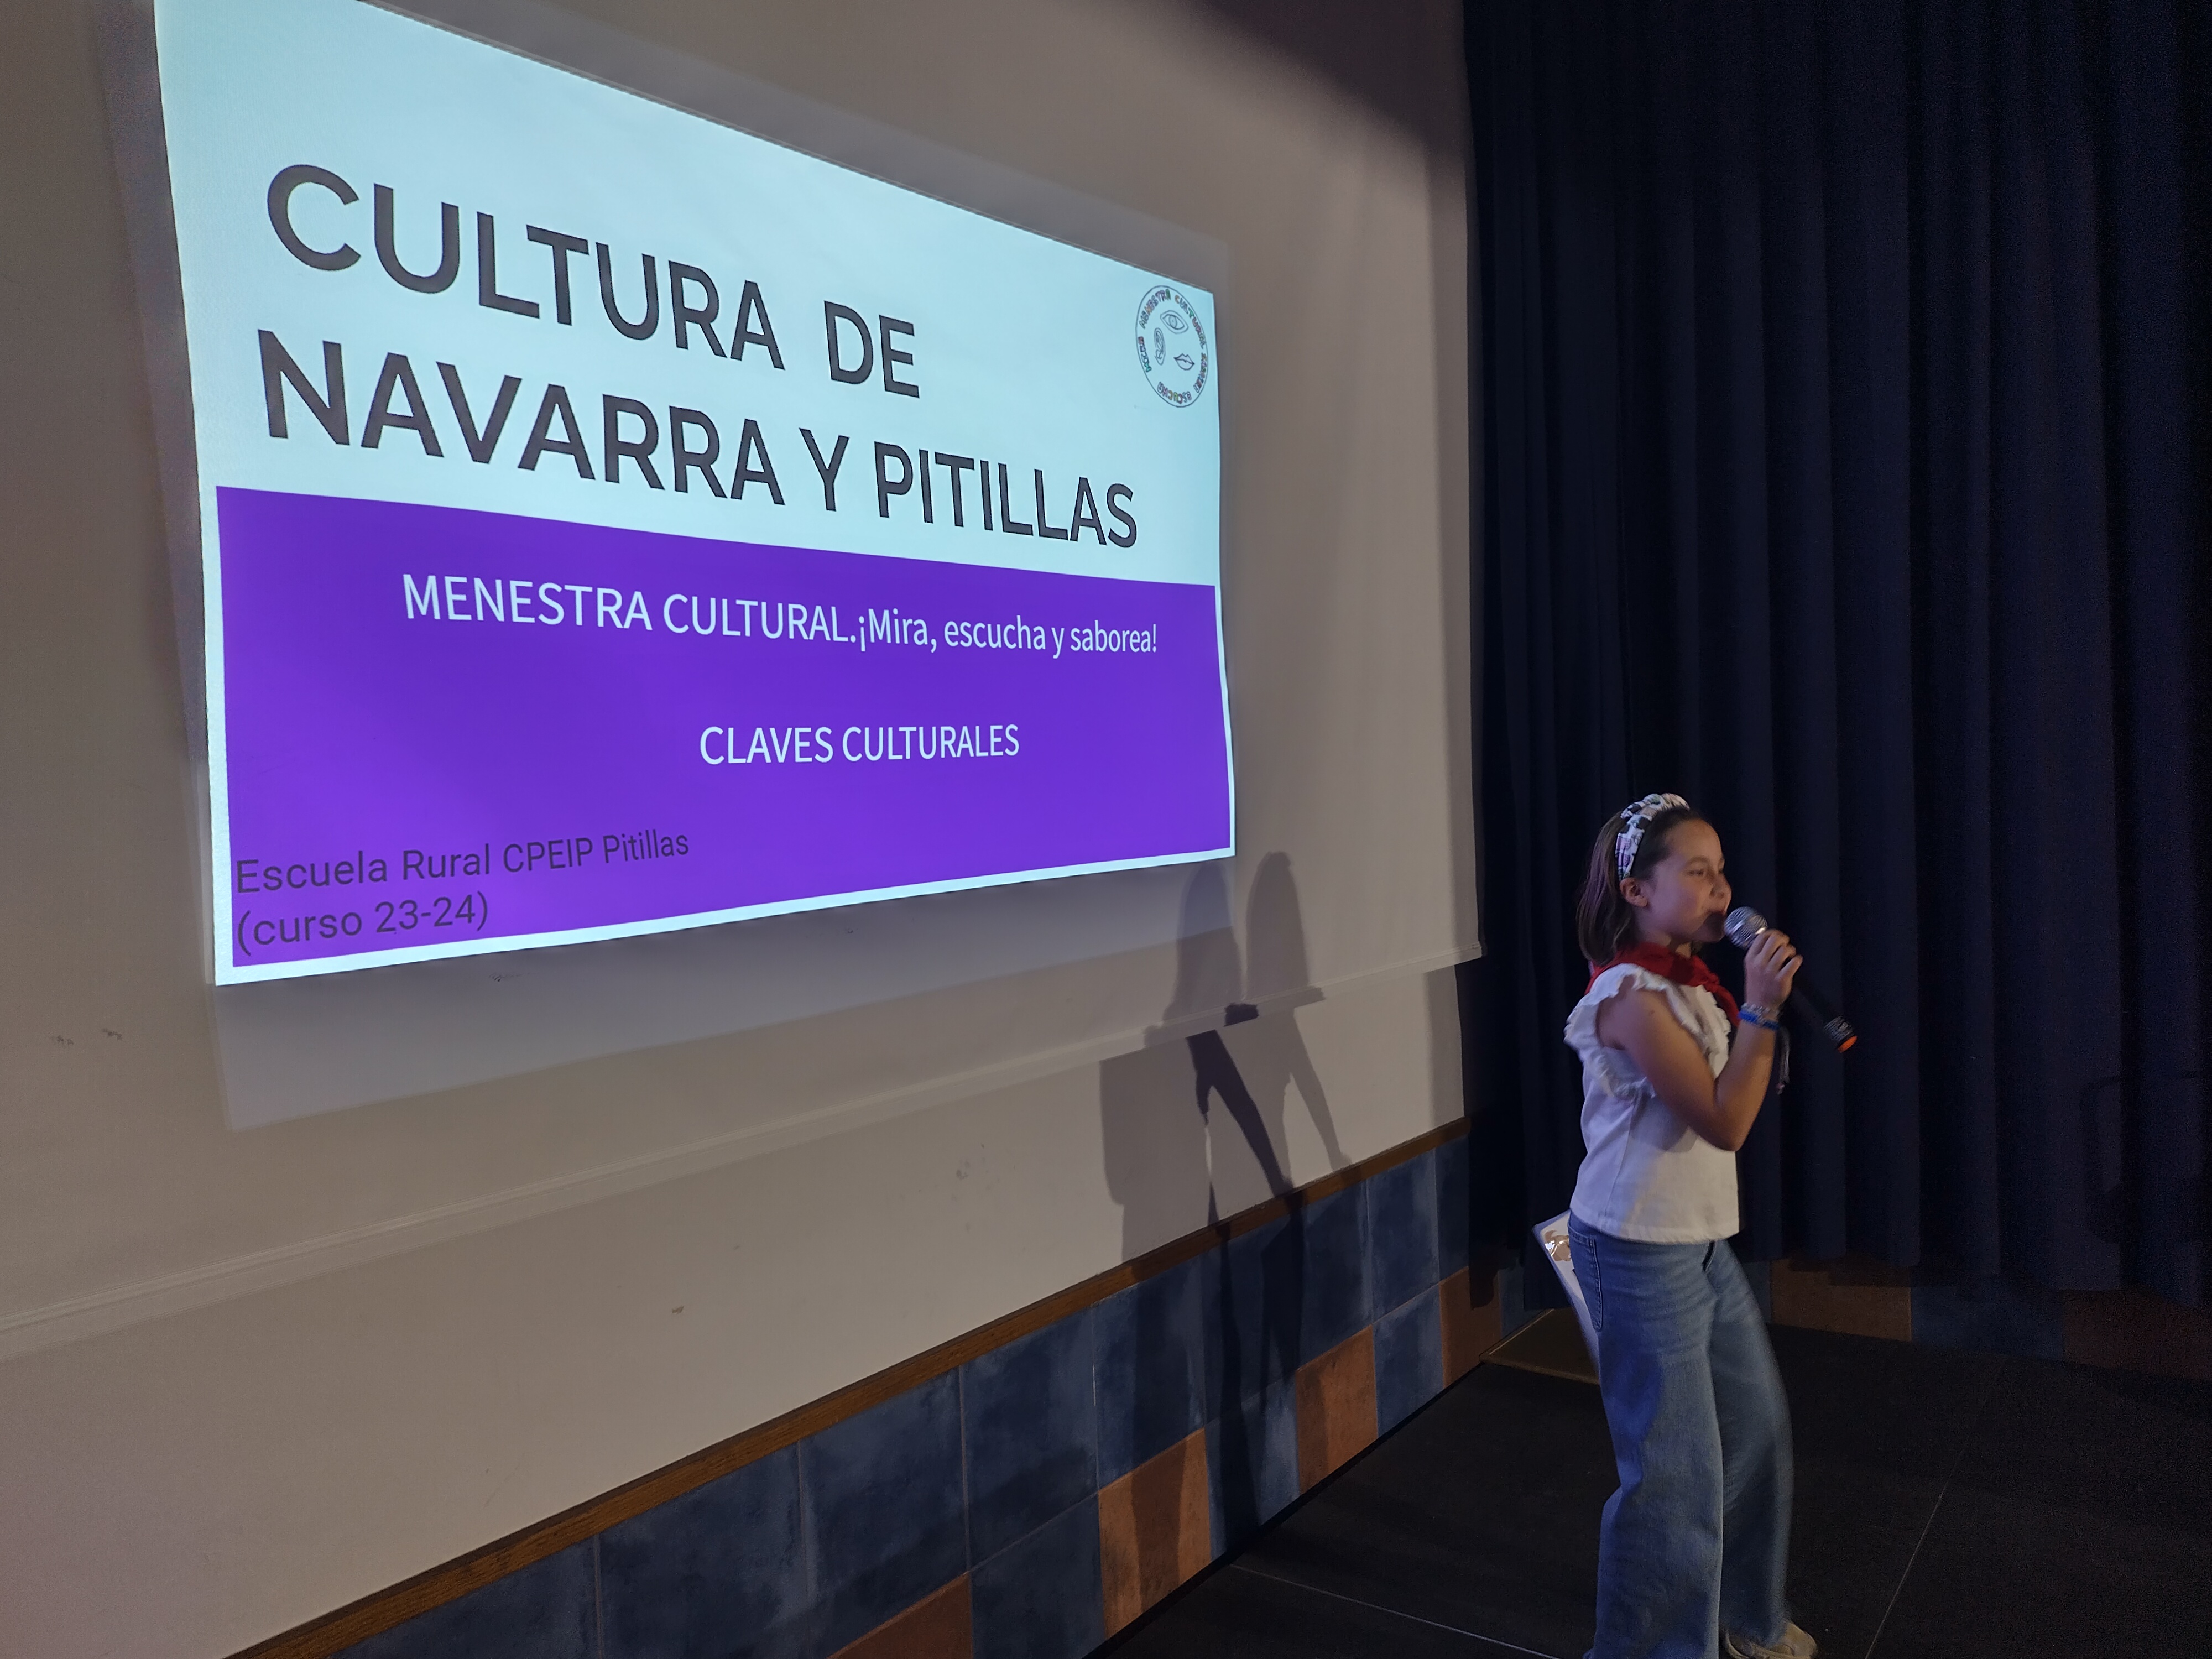 Comenzamos la 3º fase de nuestro proyecto de Aprendizaje y Servicio Menestra cultural. Esta vez conociendo la cultura de Navarra y Pitillas.